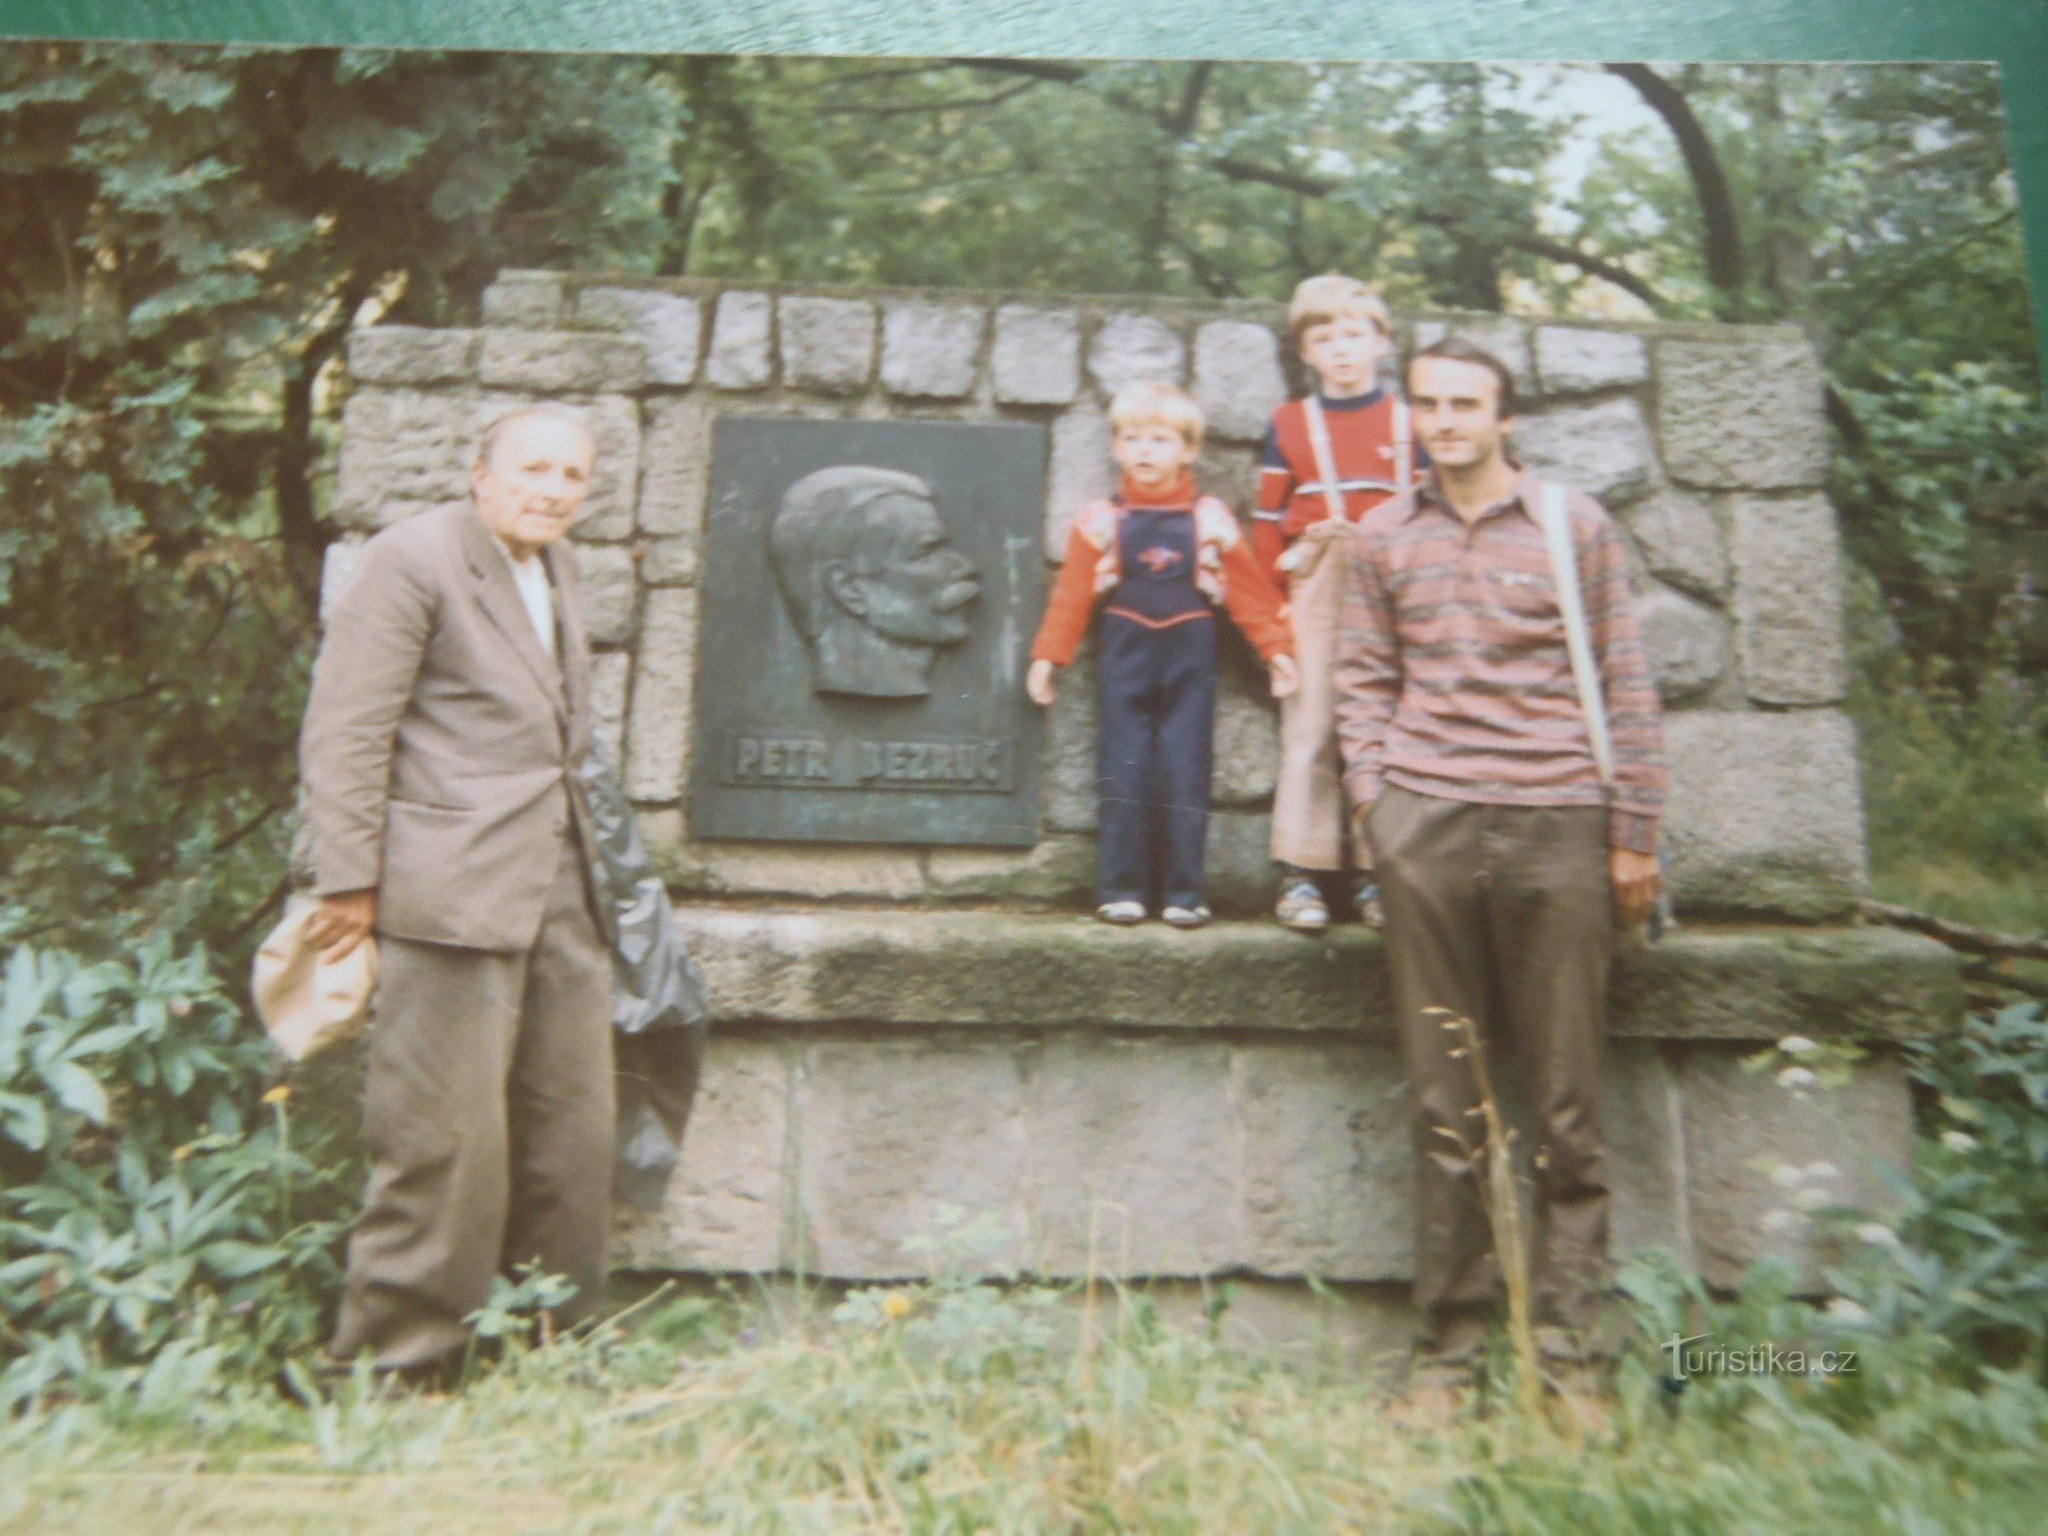 Isti kraj, leto 1987. Moj oče Otakar Vašek, nečak Petr Bezruč in vnuk Anto